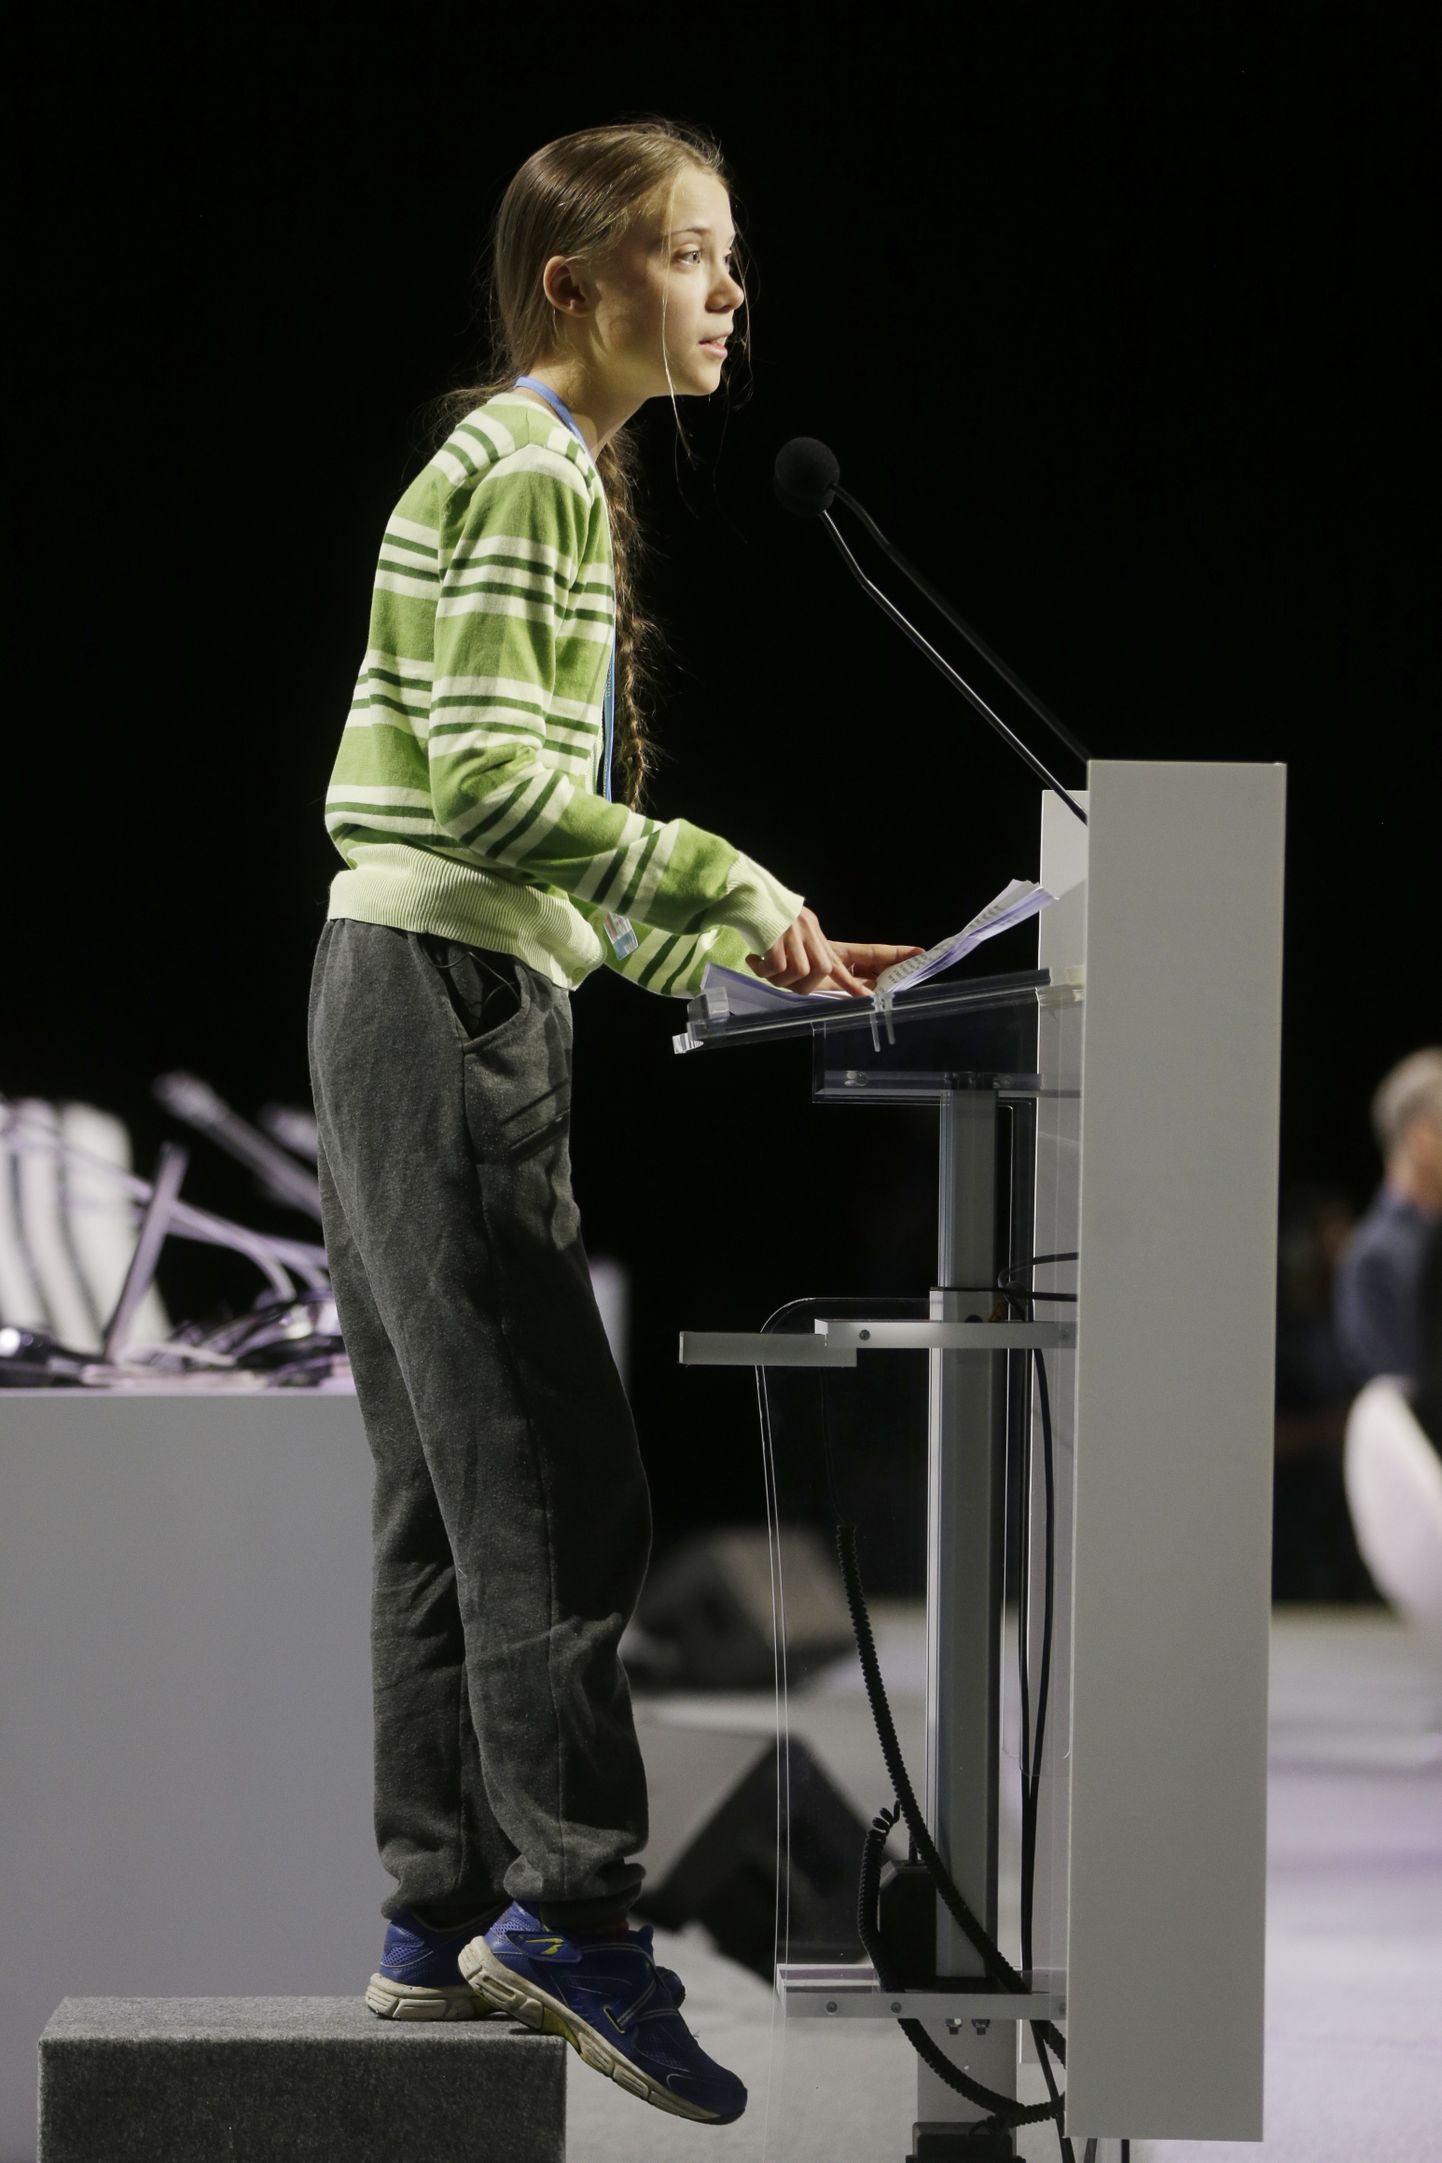 Kliimaaktivist Greta Thunberg esinemas 11. detsembril Hispaanias Madridis kliimakonverentsil